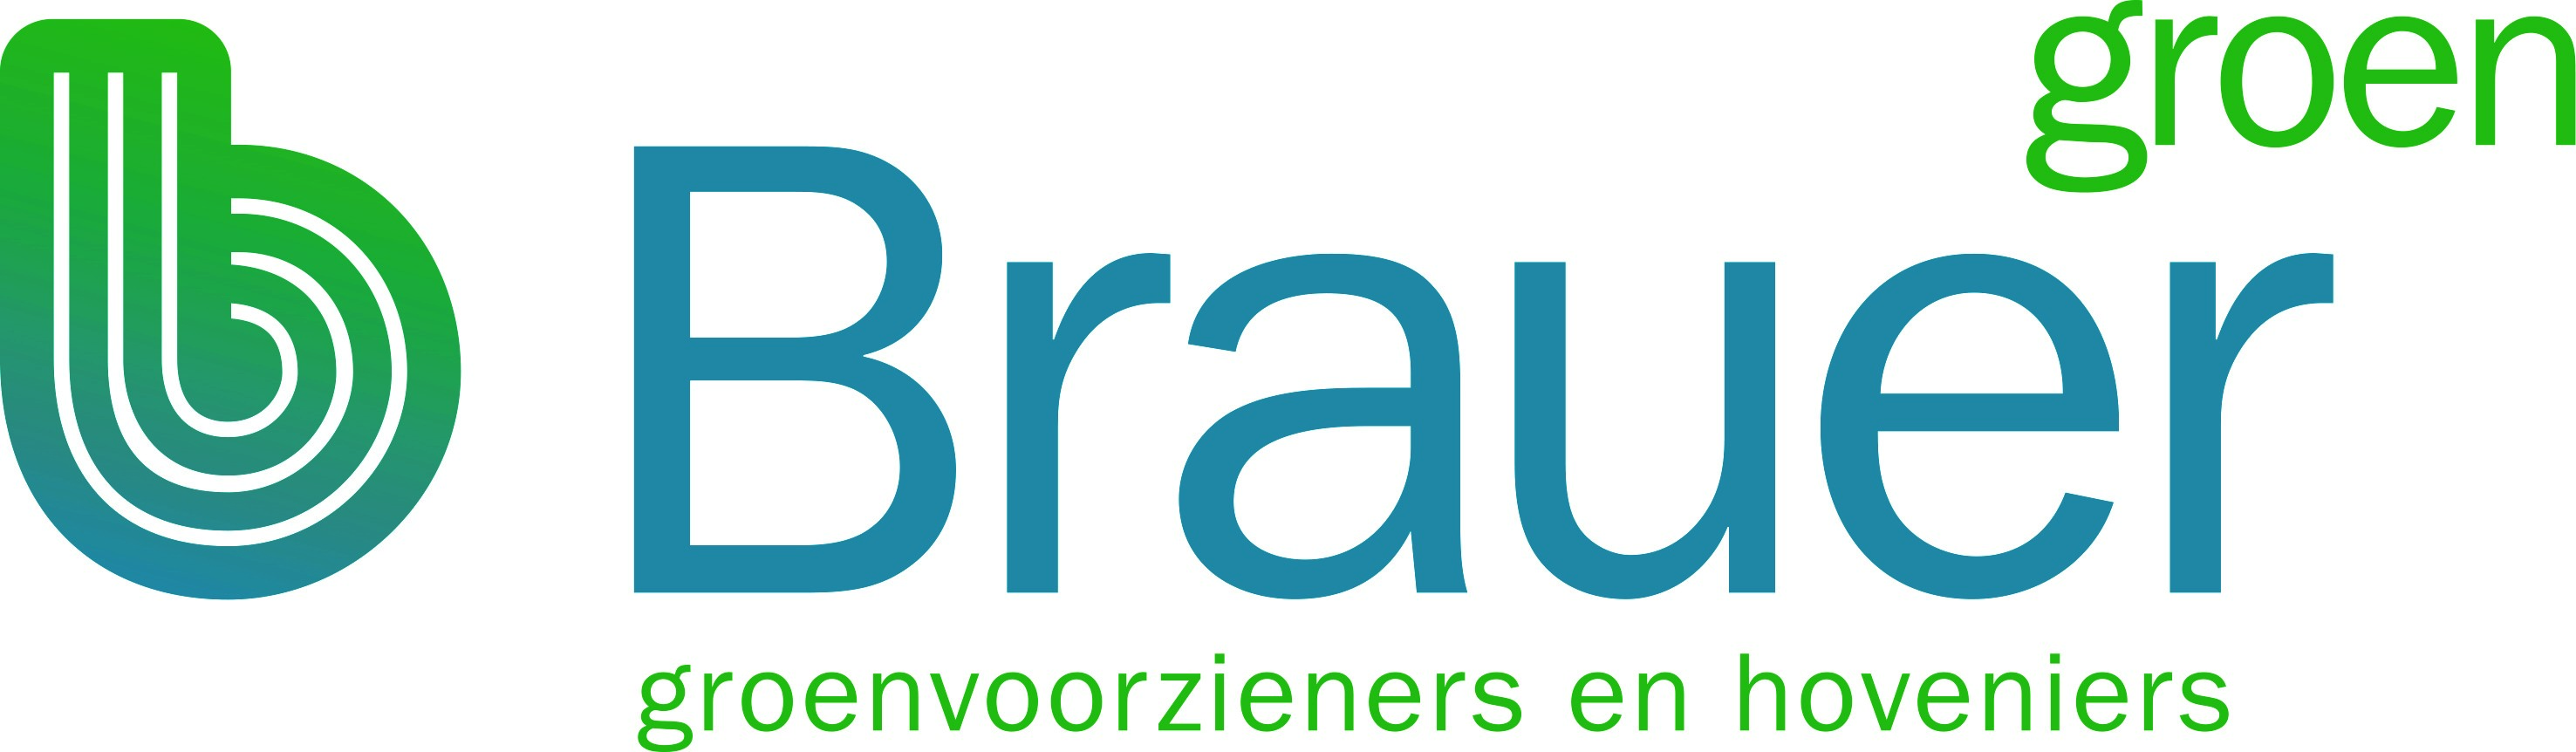 Brauer groen logo